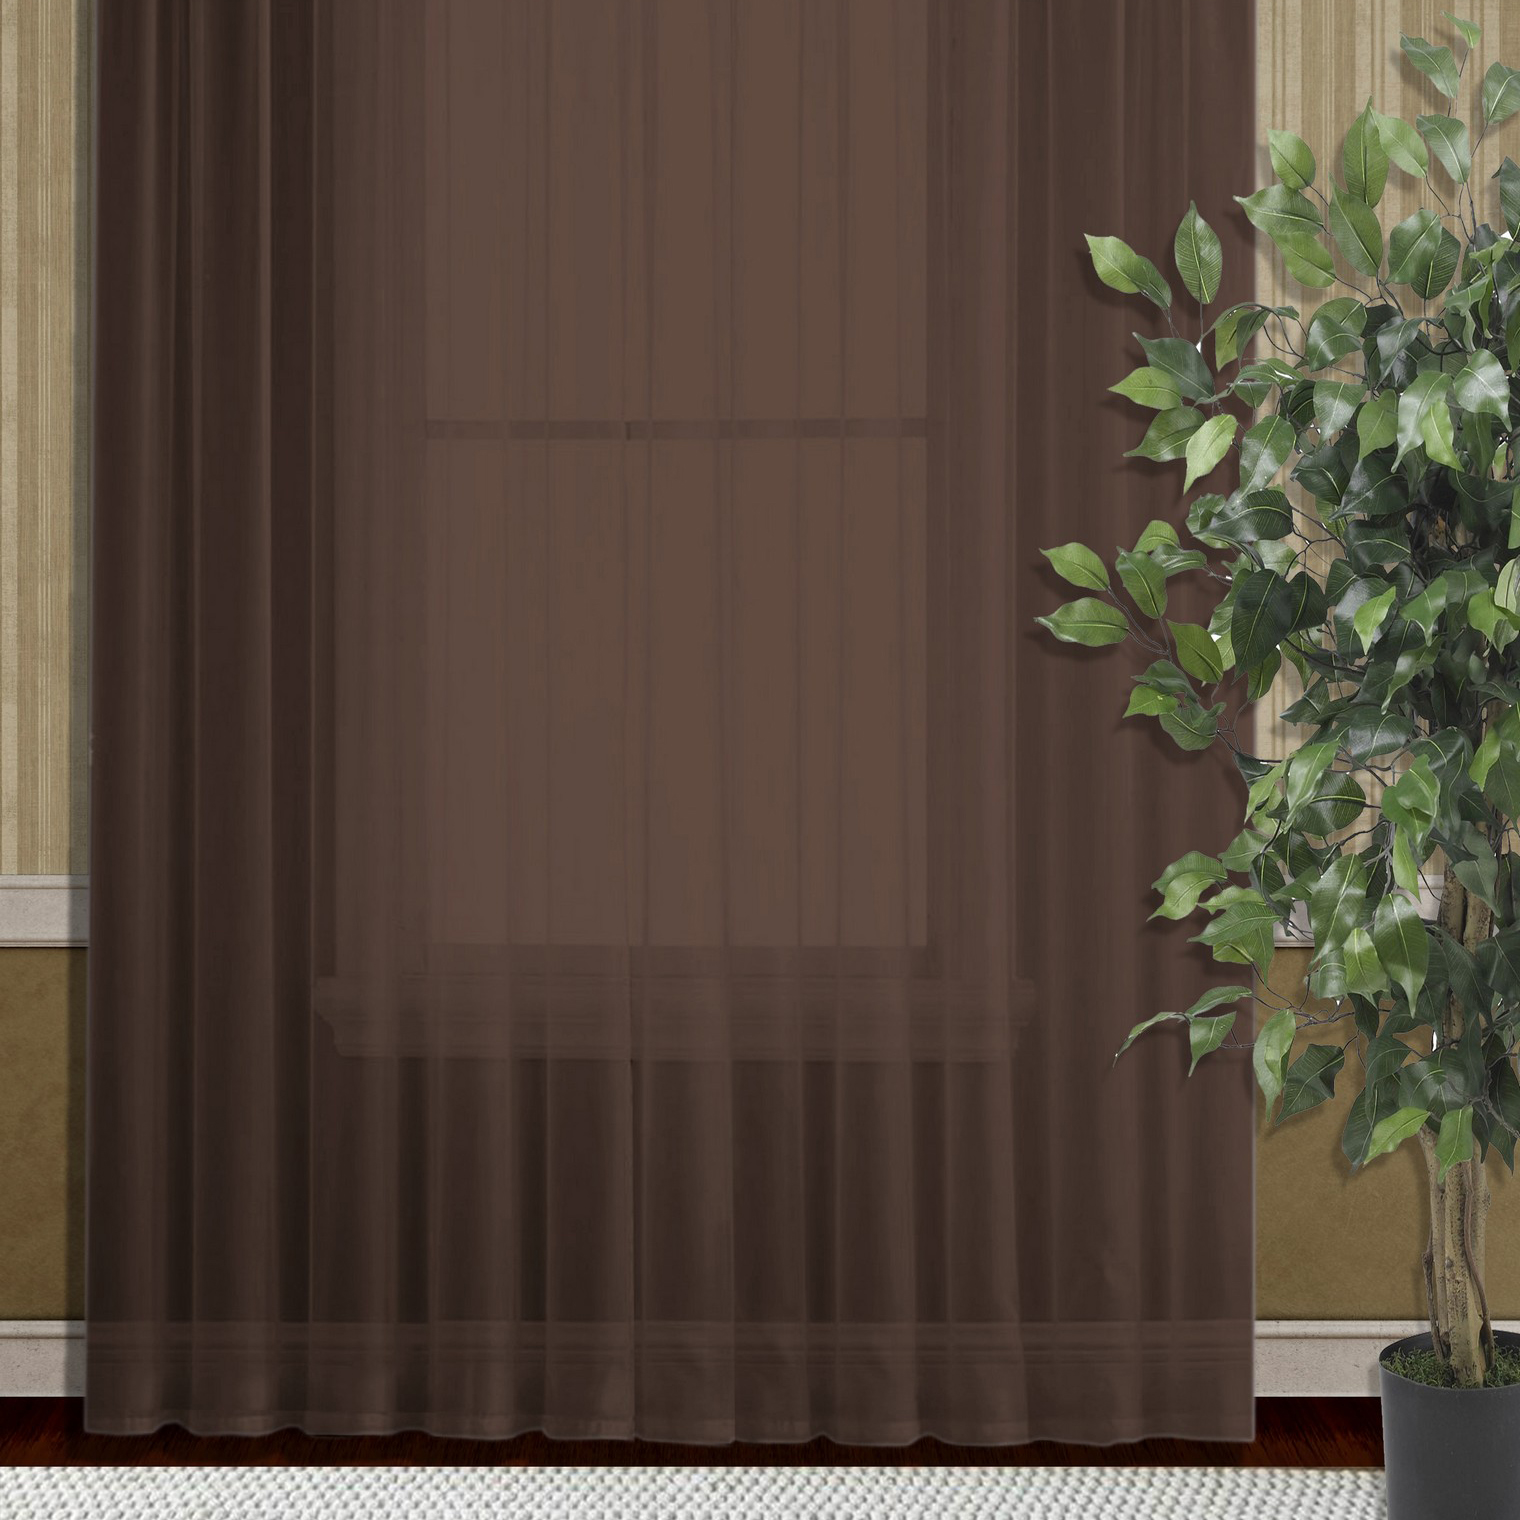 Классические шторы Danolly цвет: шоколадный (250х250 см - 1 шт), размер 250х250 см - 1 шт ksl928464 Классические шторы Danolly цвет: шоколадный (250х250 см - 1 шт) - фото 1